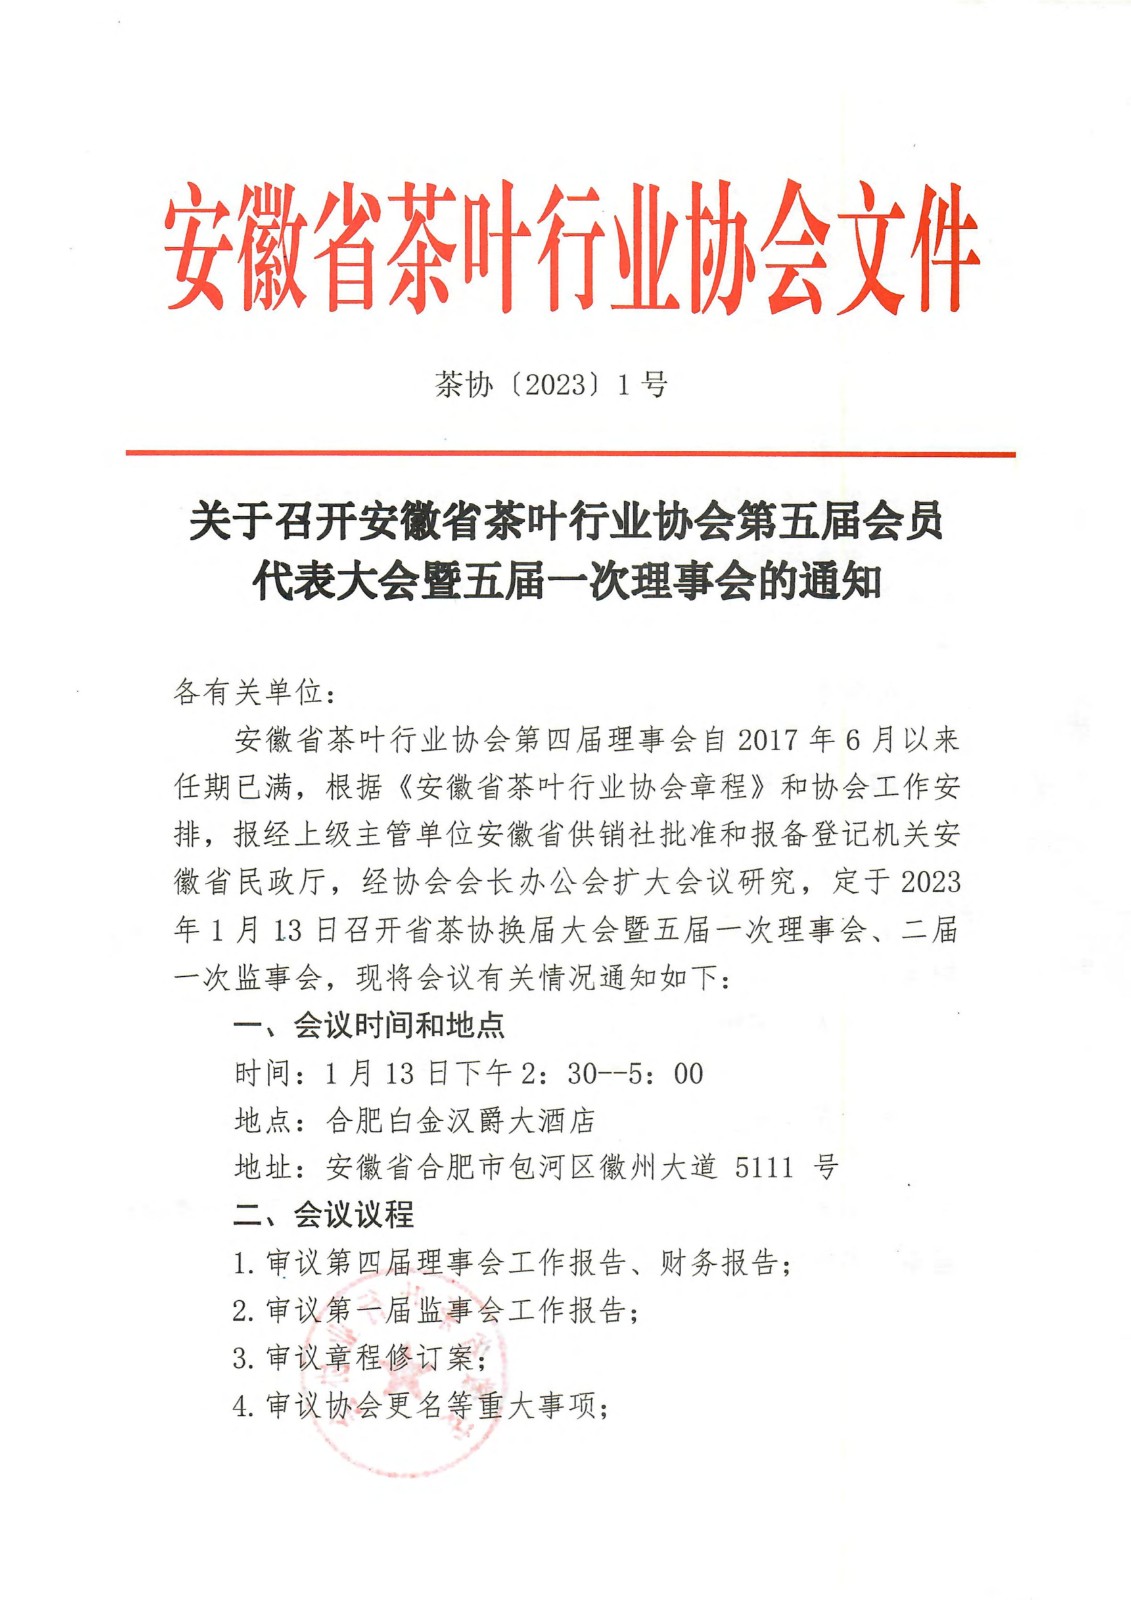 关于召开安徽省茶叶行业协会第五届会员代表大会暨五届一次理事会的通知(3)_00.jpg